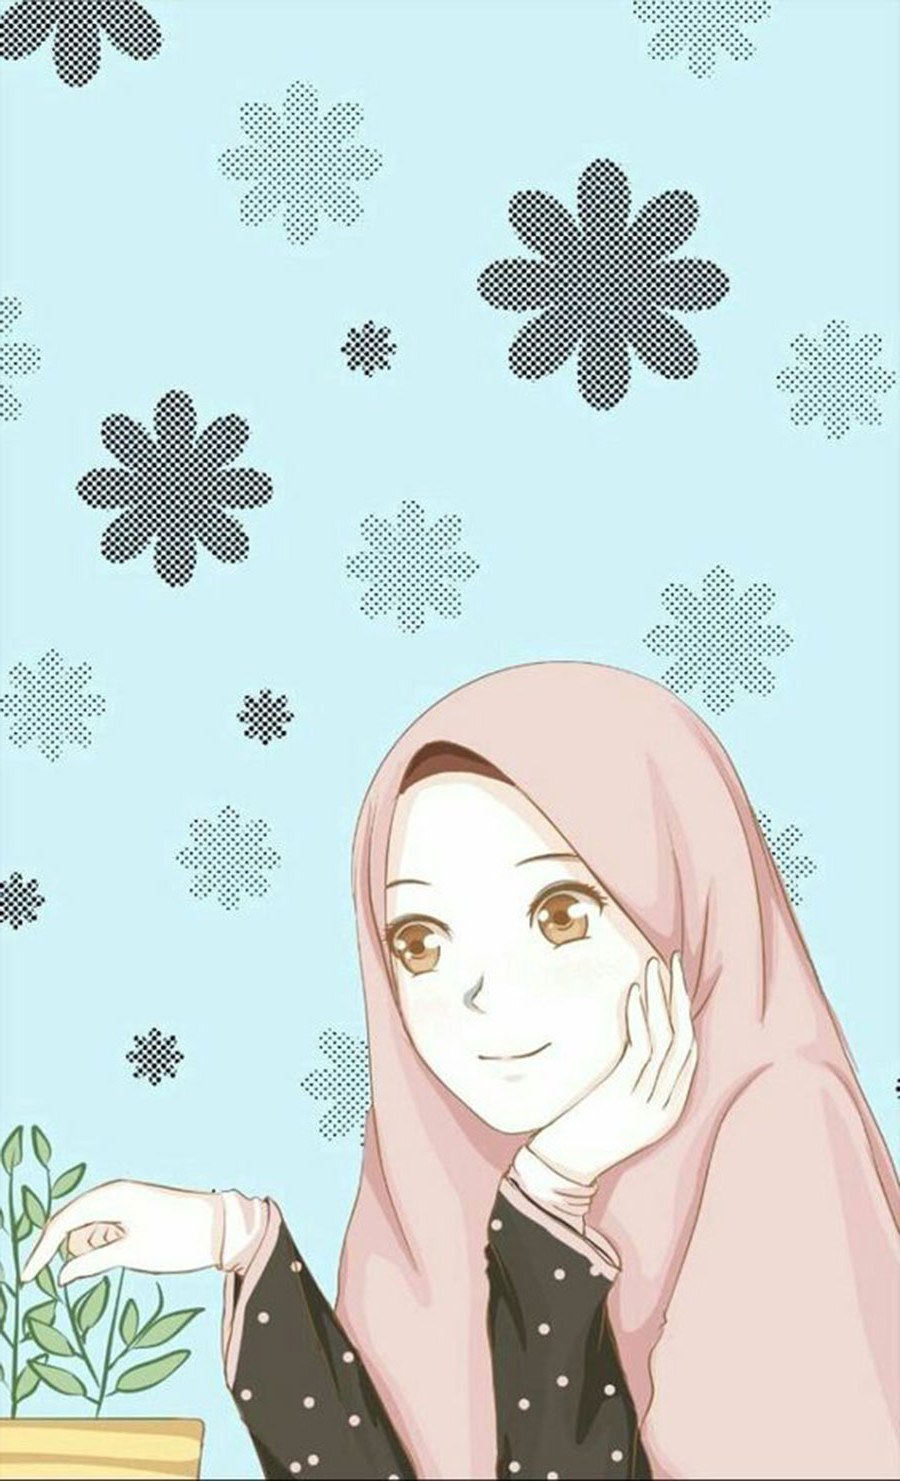 Inspirasi Muslimah Kartun Cantik Whdr 1000 Gambar Kartun Muslimah Cantik Bercadar Kacamata El